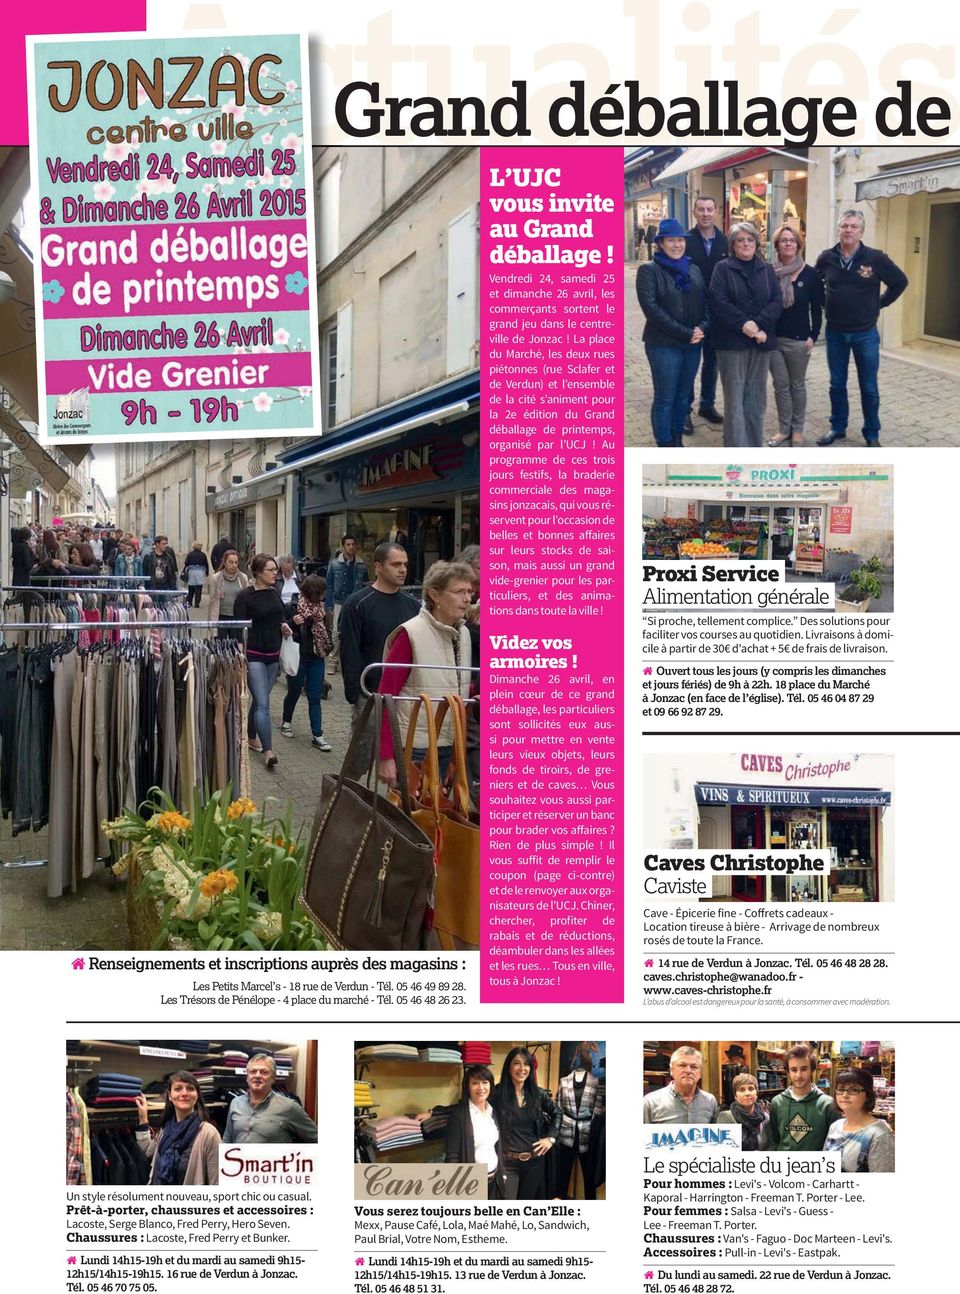 La place du Marché, les deux rues piétonnes (rue Sclafer et de Verdun) et l ensemble de la cité s animent pour la 2e édition du Grand déballage de printemps, organisé par l UCJ!